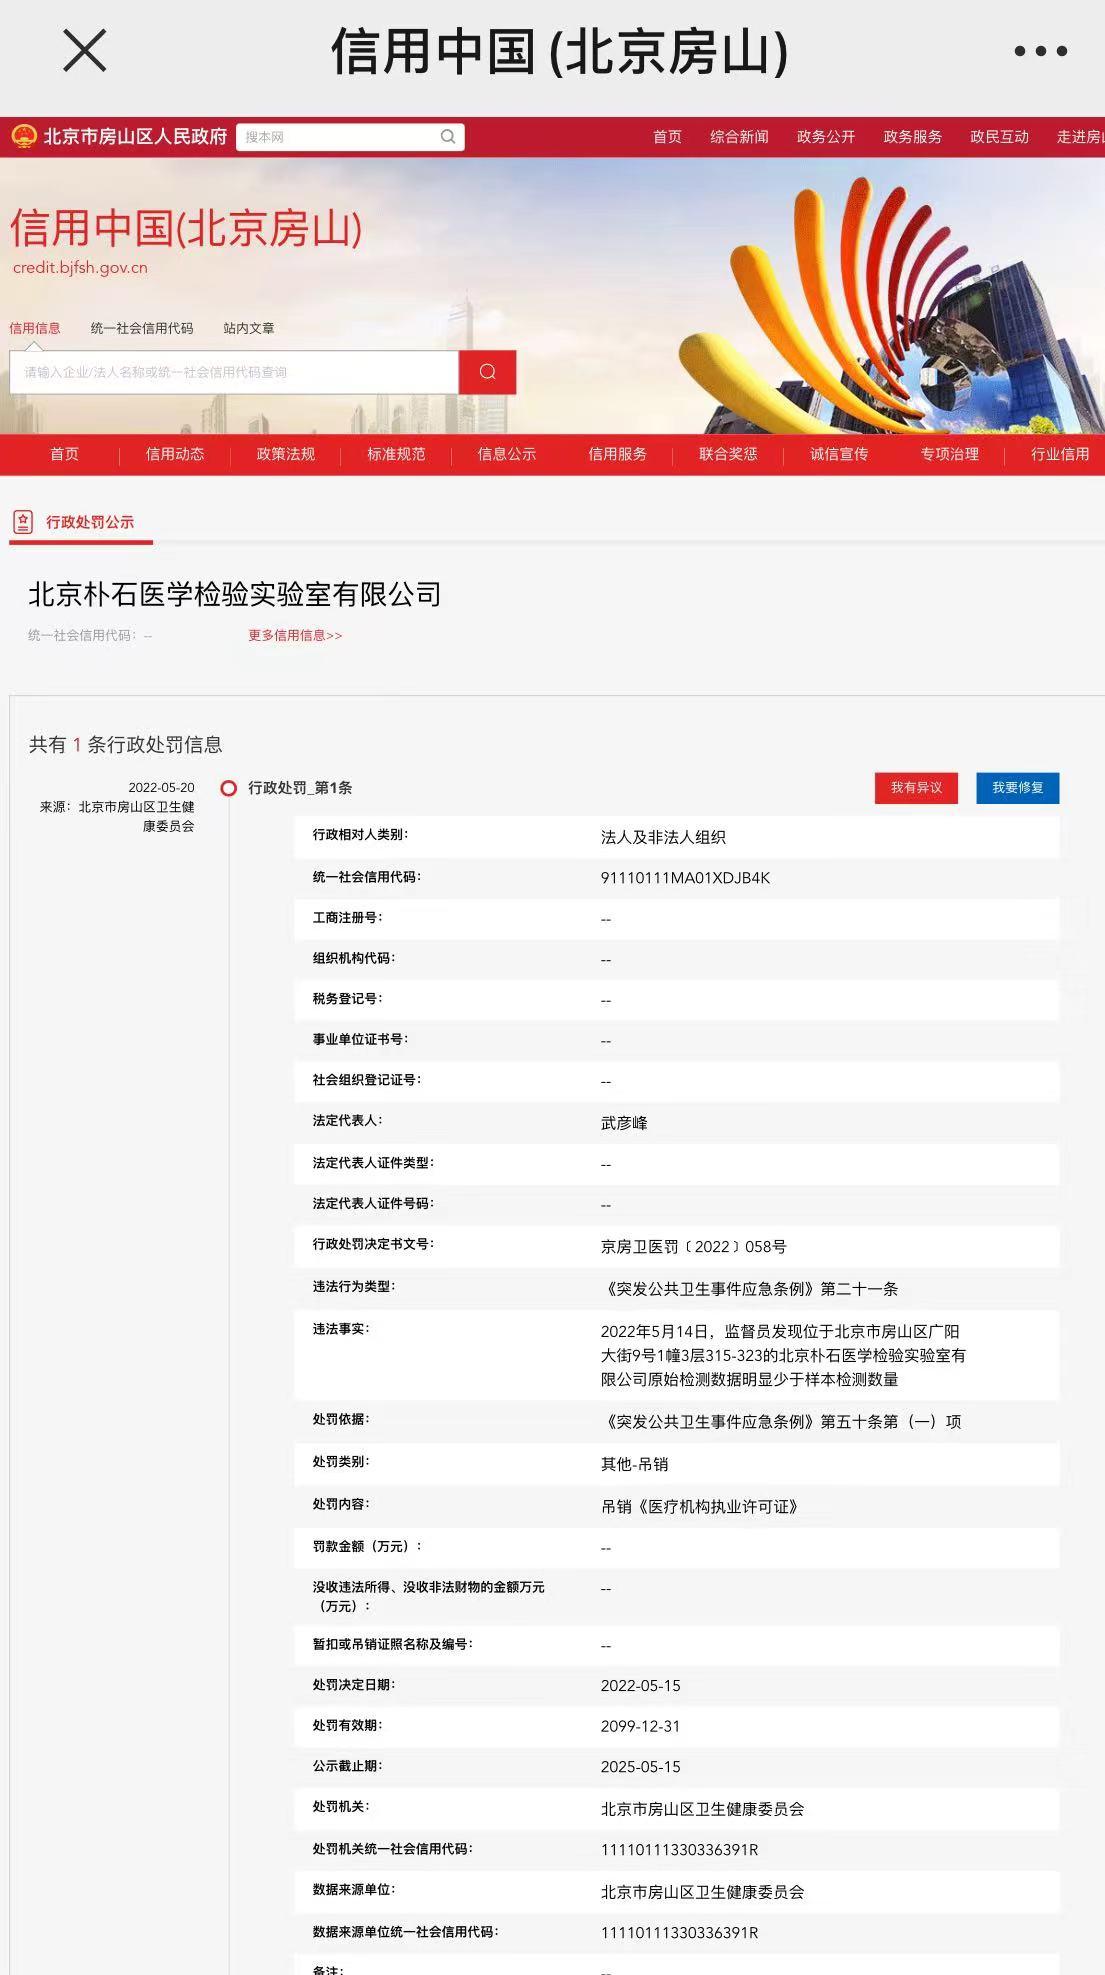 北京一检验实验室被<font color="red">吊销</font>执业许可证：原始检测数据少于样本数量